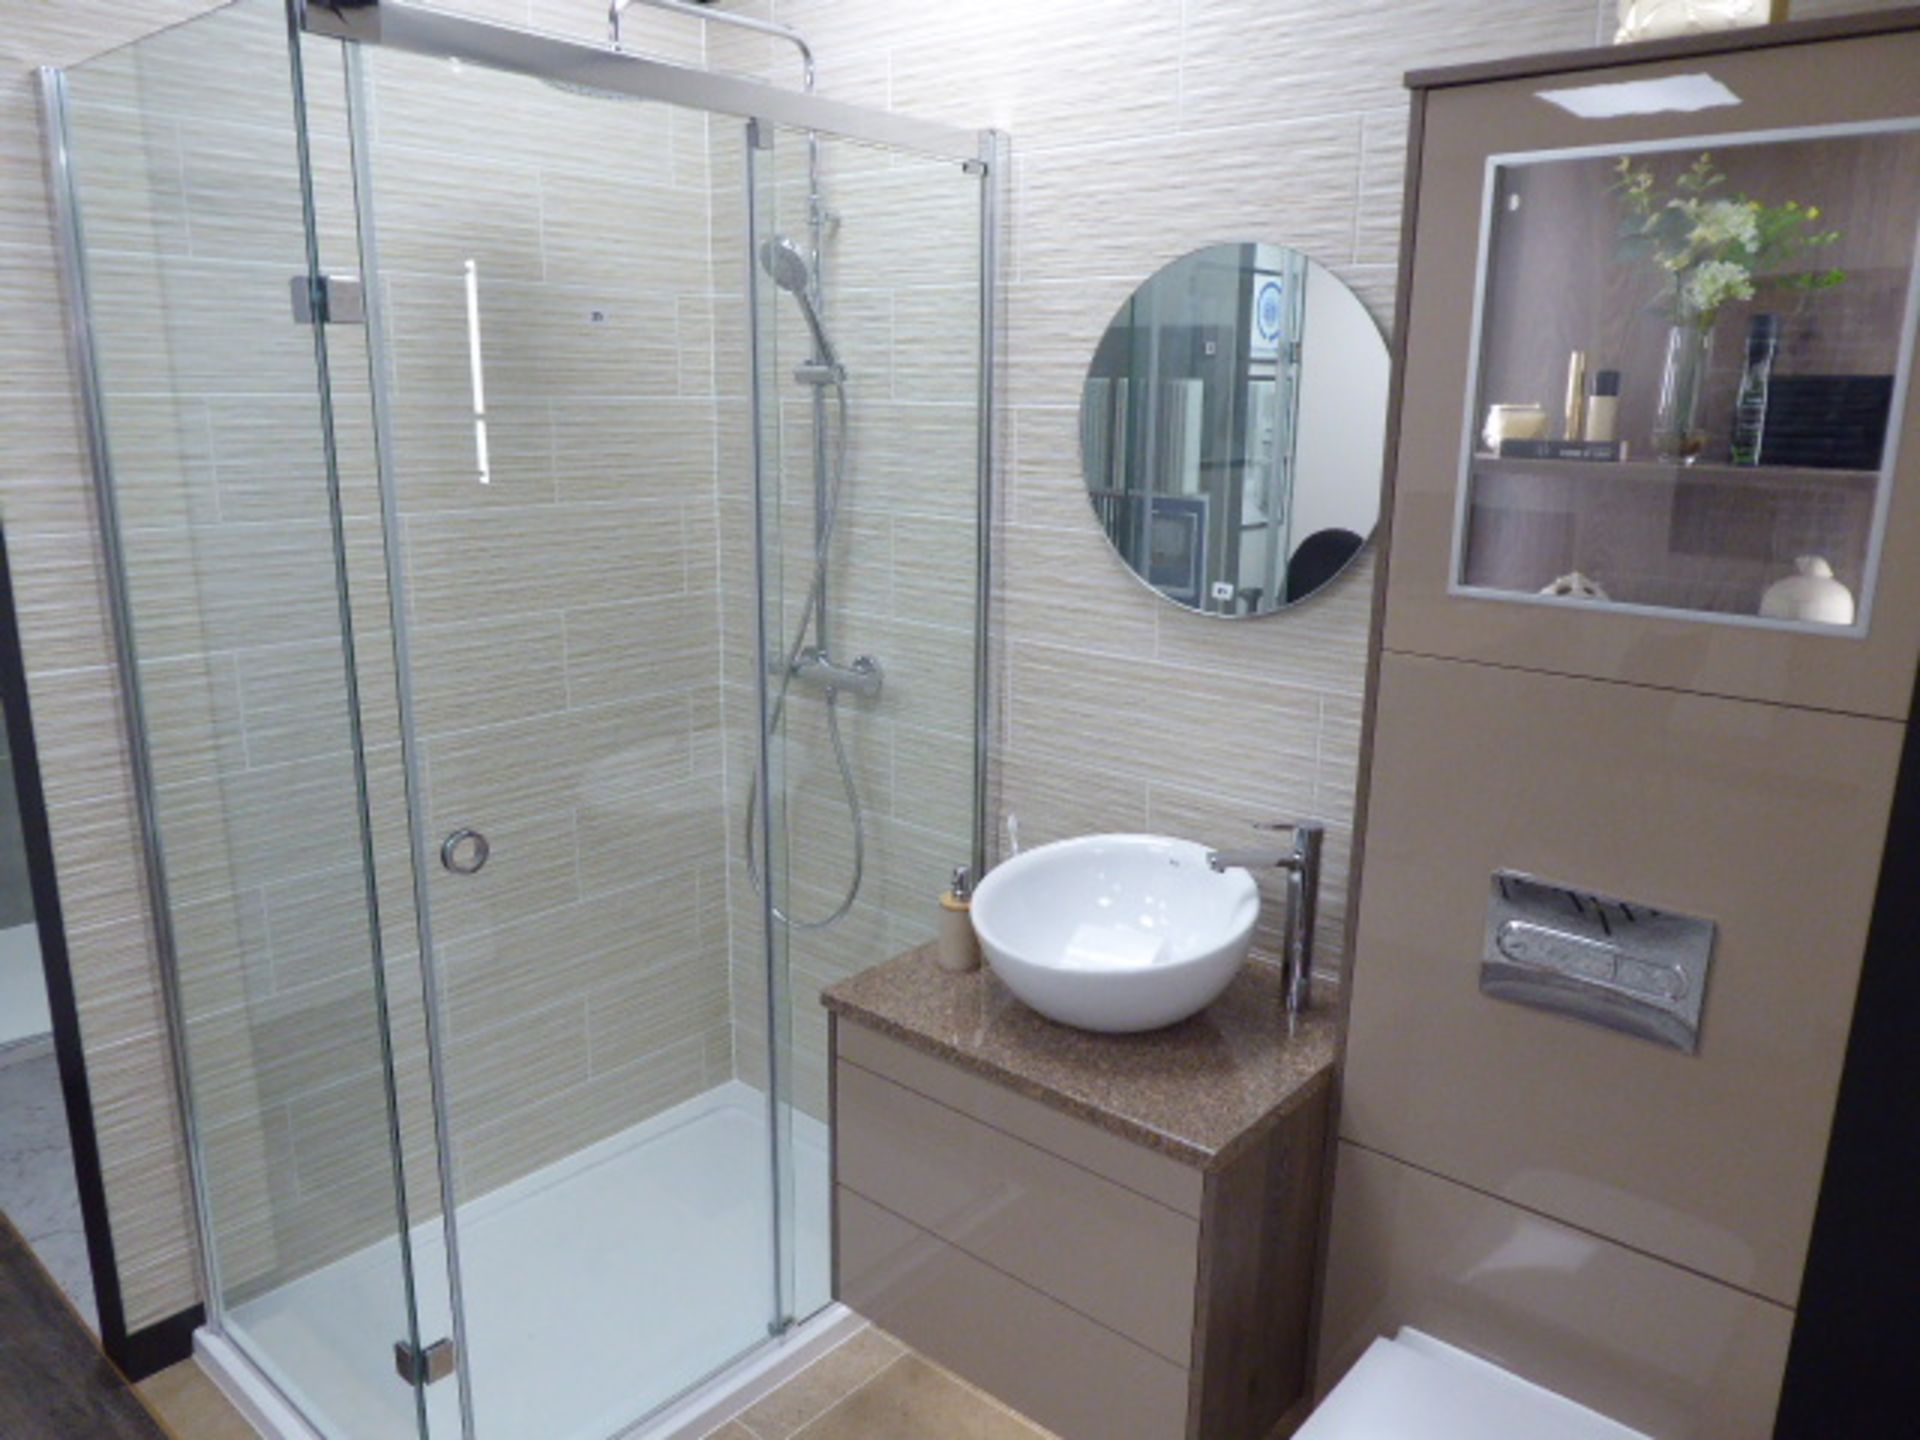 Roca Ev-en-t shower room with rectangular shower tray, glass shower screen and door, mixer shower